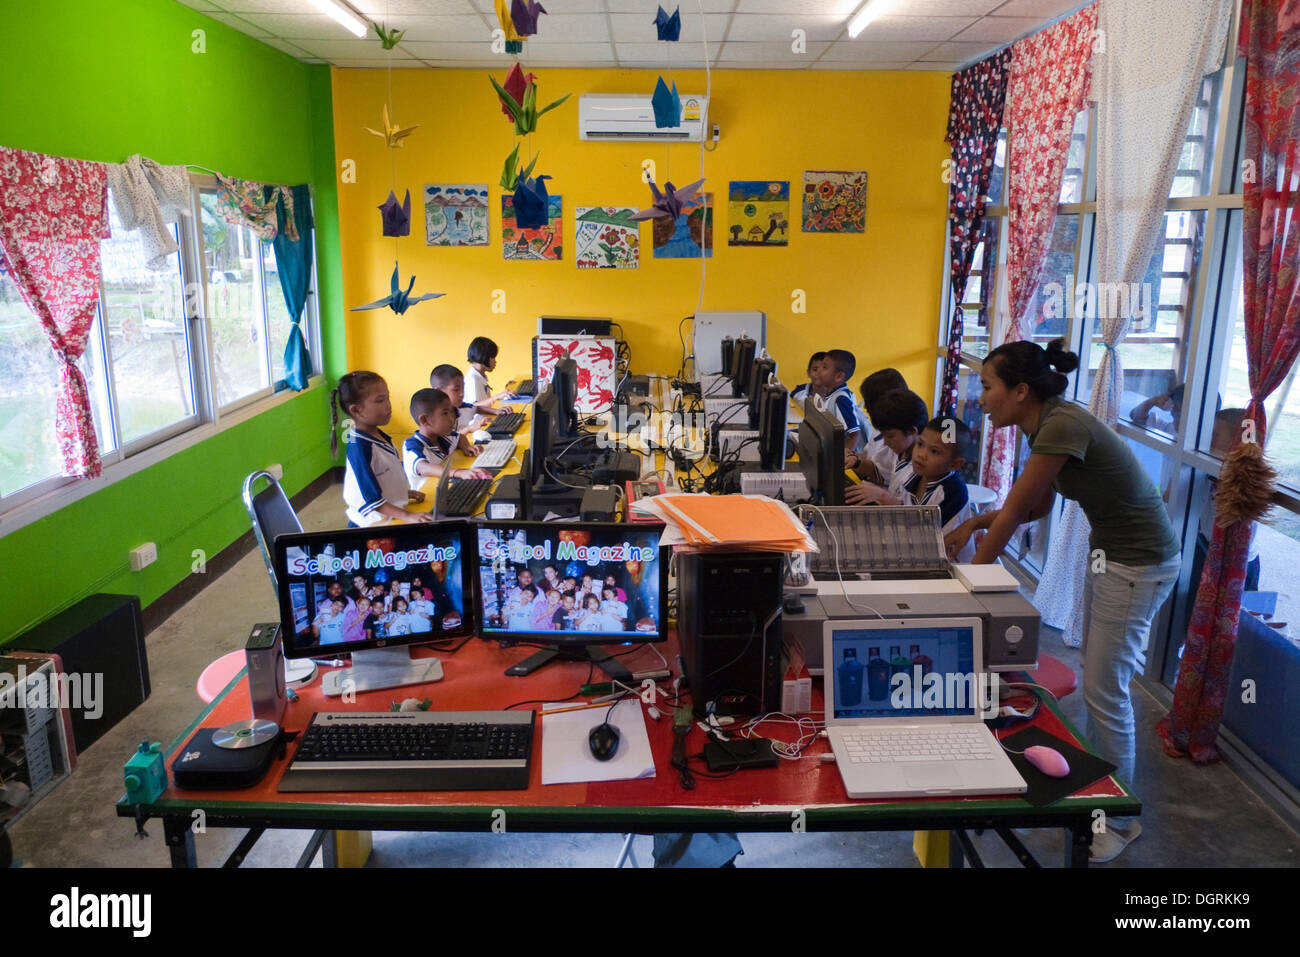 Kinder einen Computerkurs, Beluga School for Life, BSfL, Hilfsprojekt für Kinder in Not, gegründet nach dem tsunami Stockfoto